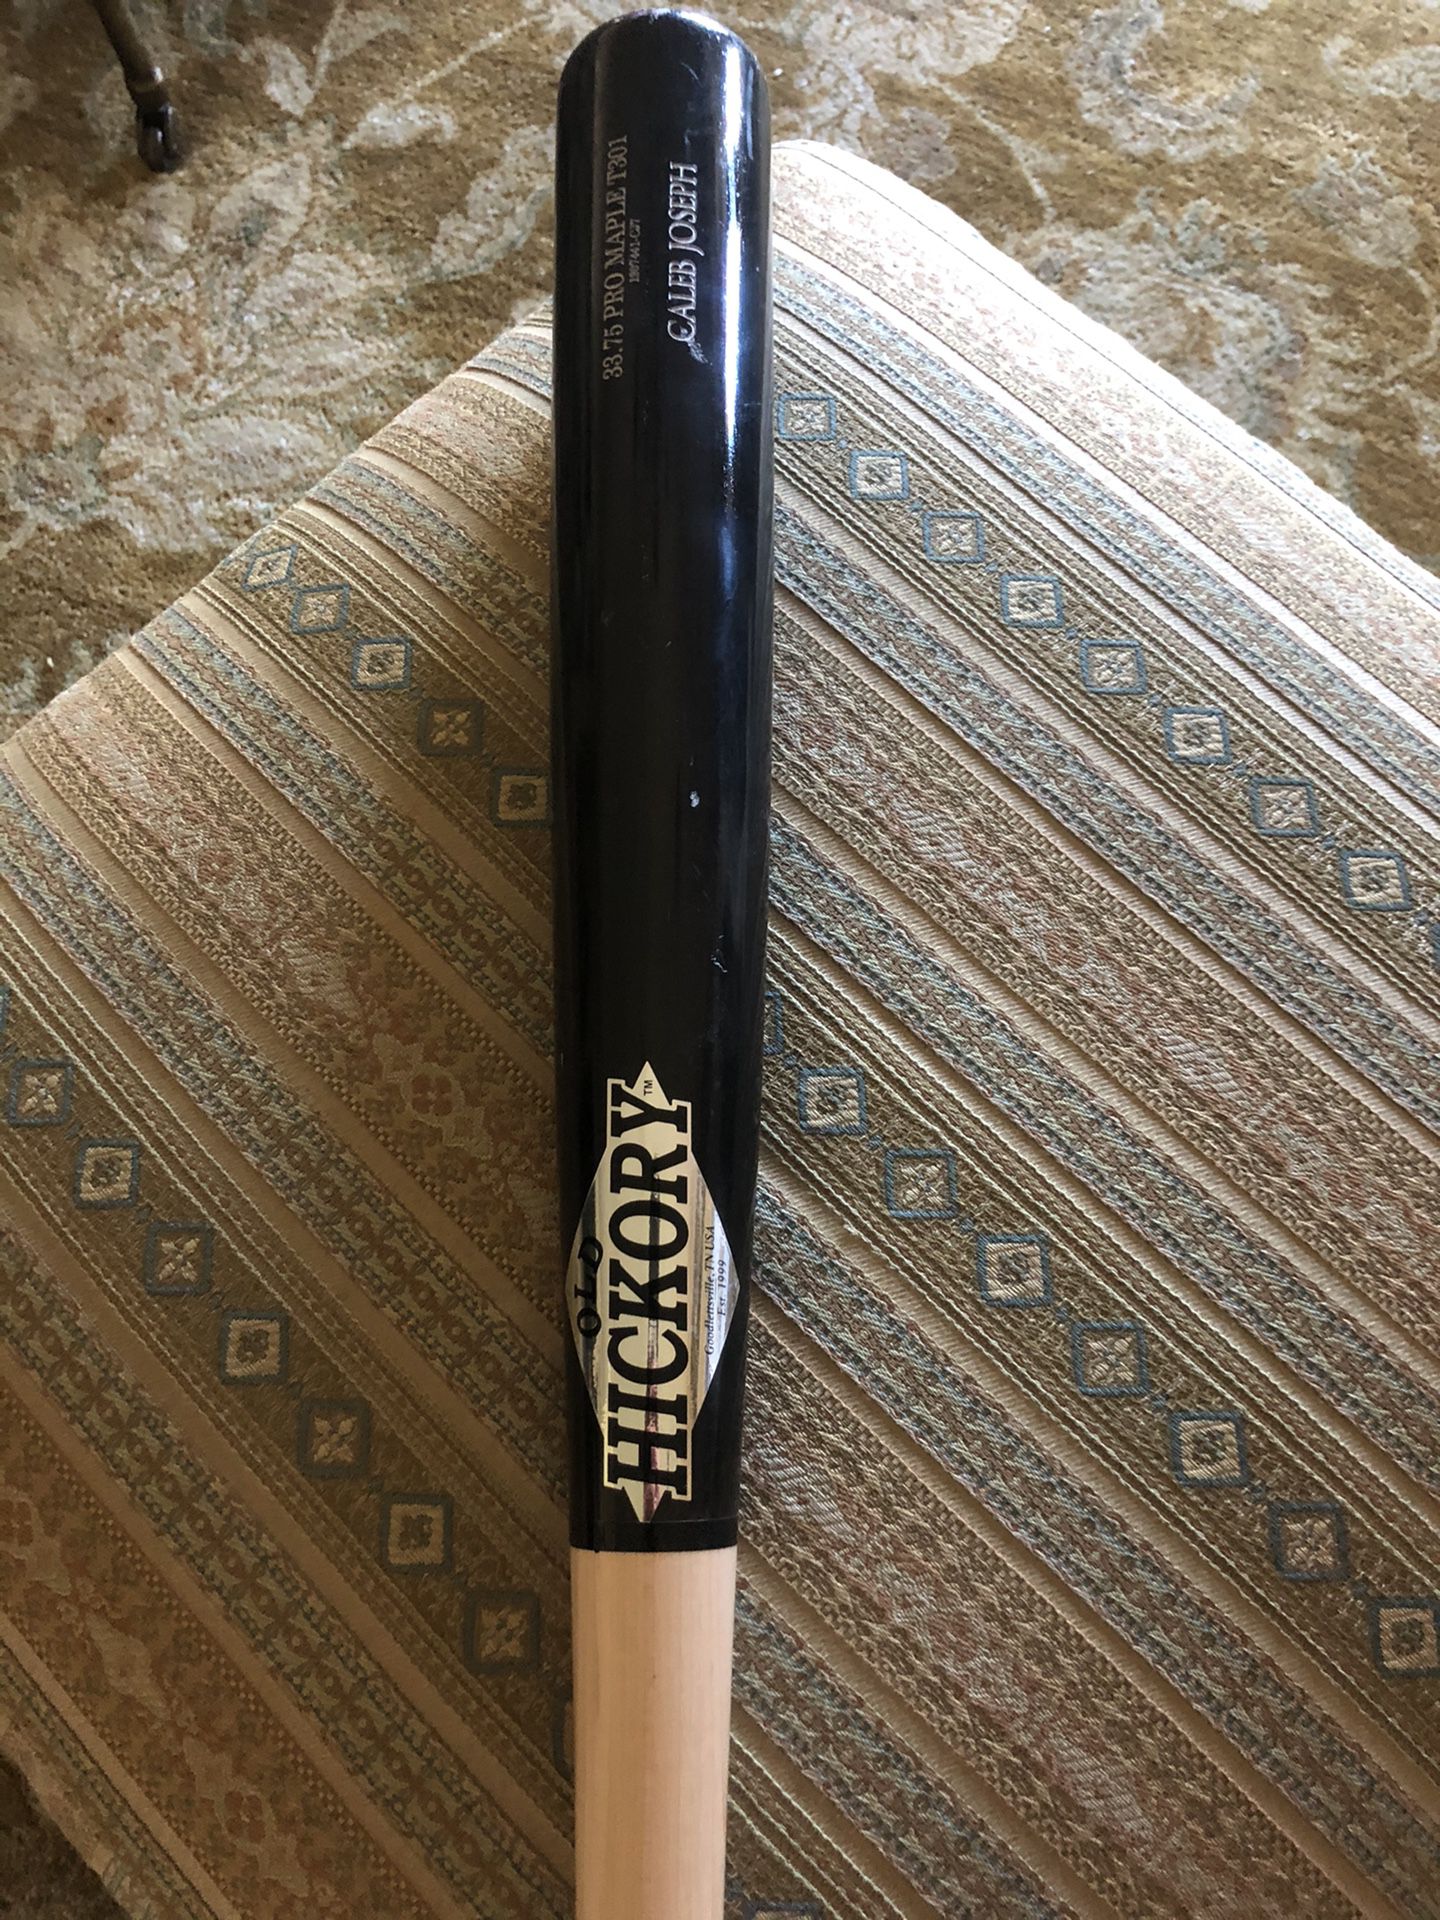 MLB old hickory baseball bat. 33.75